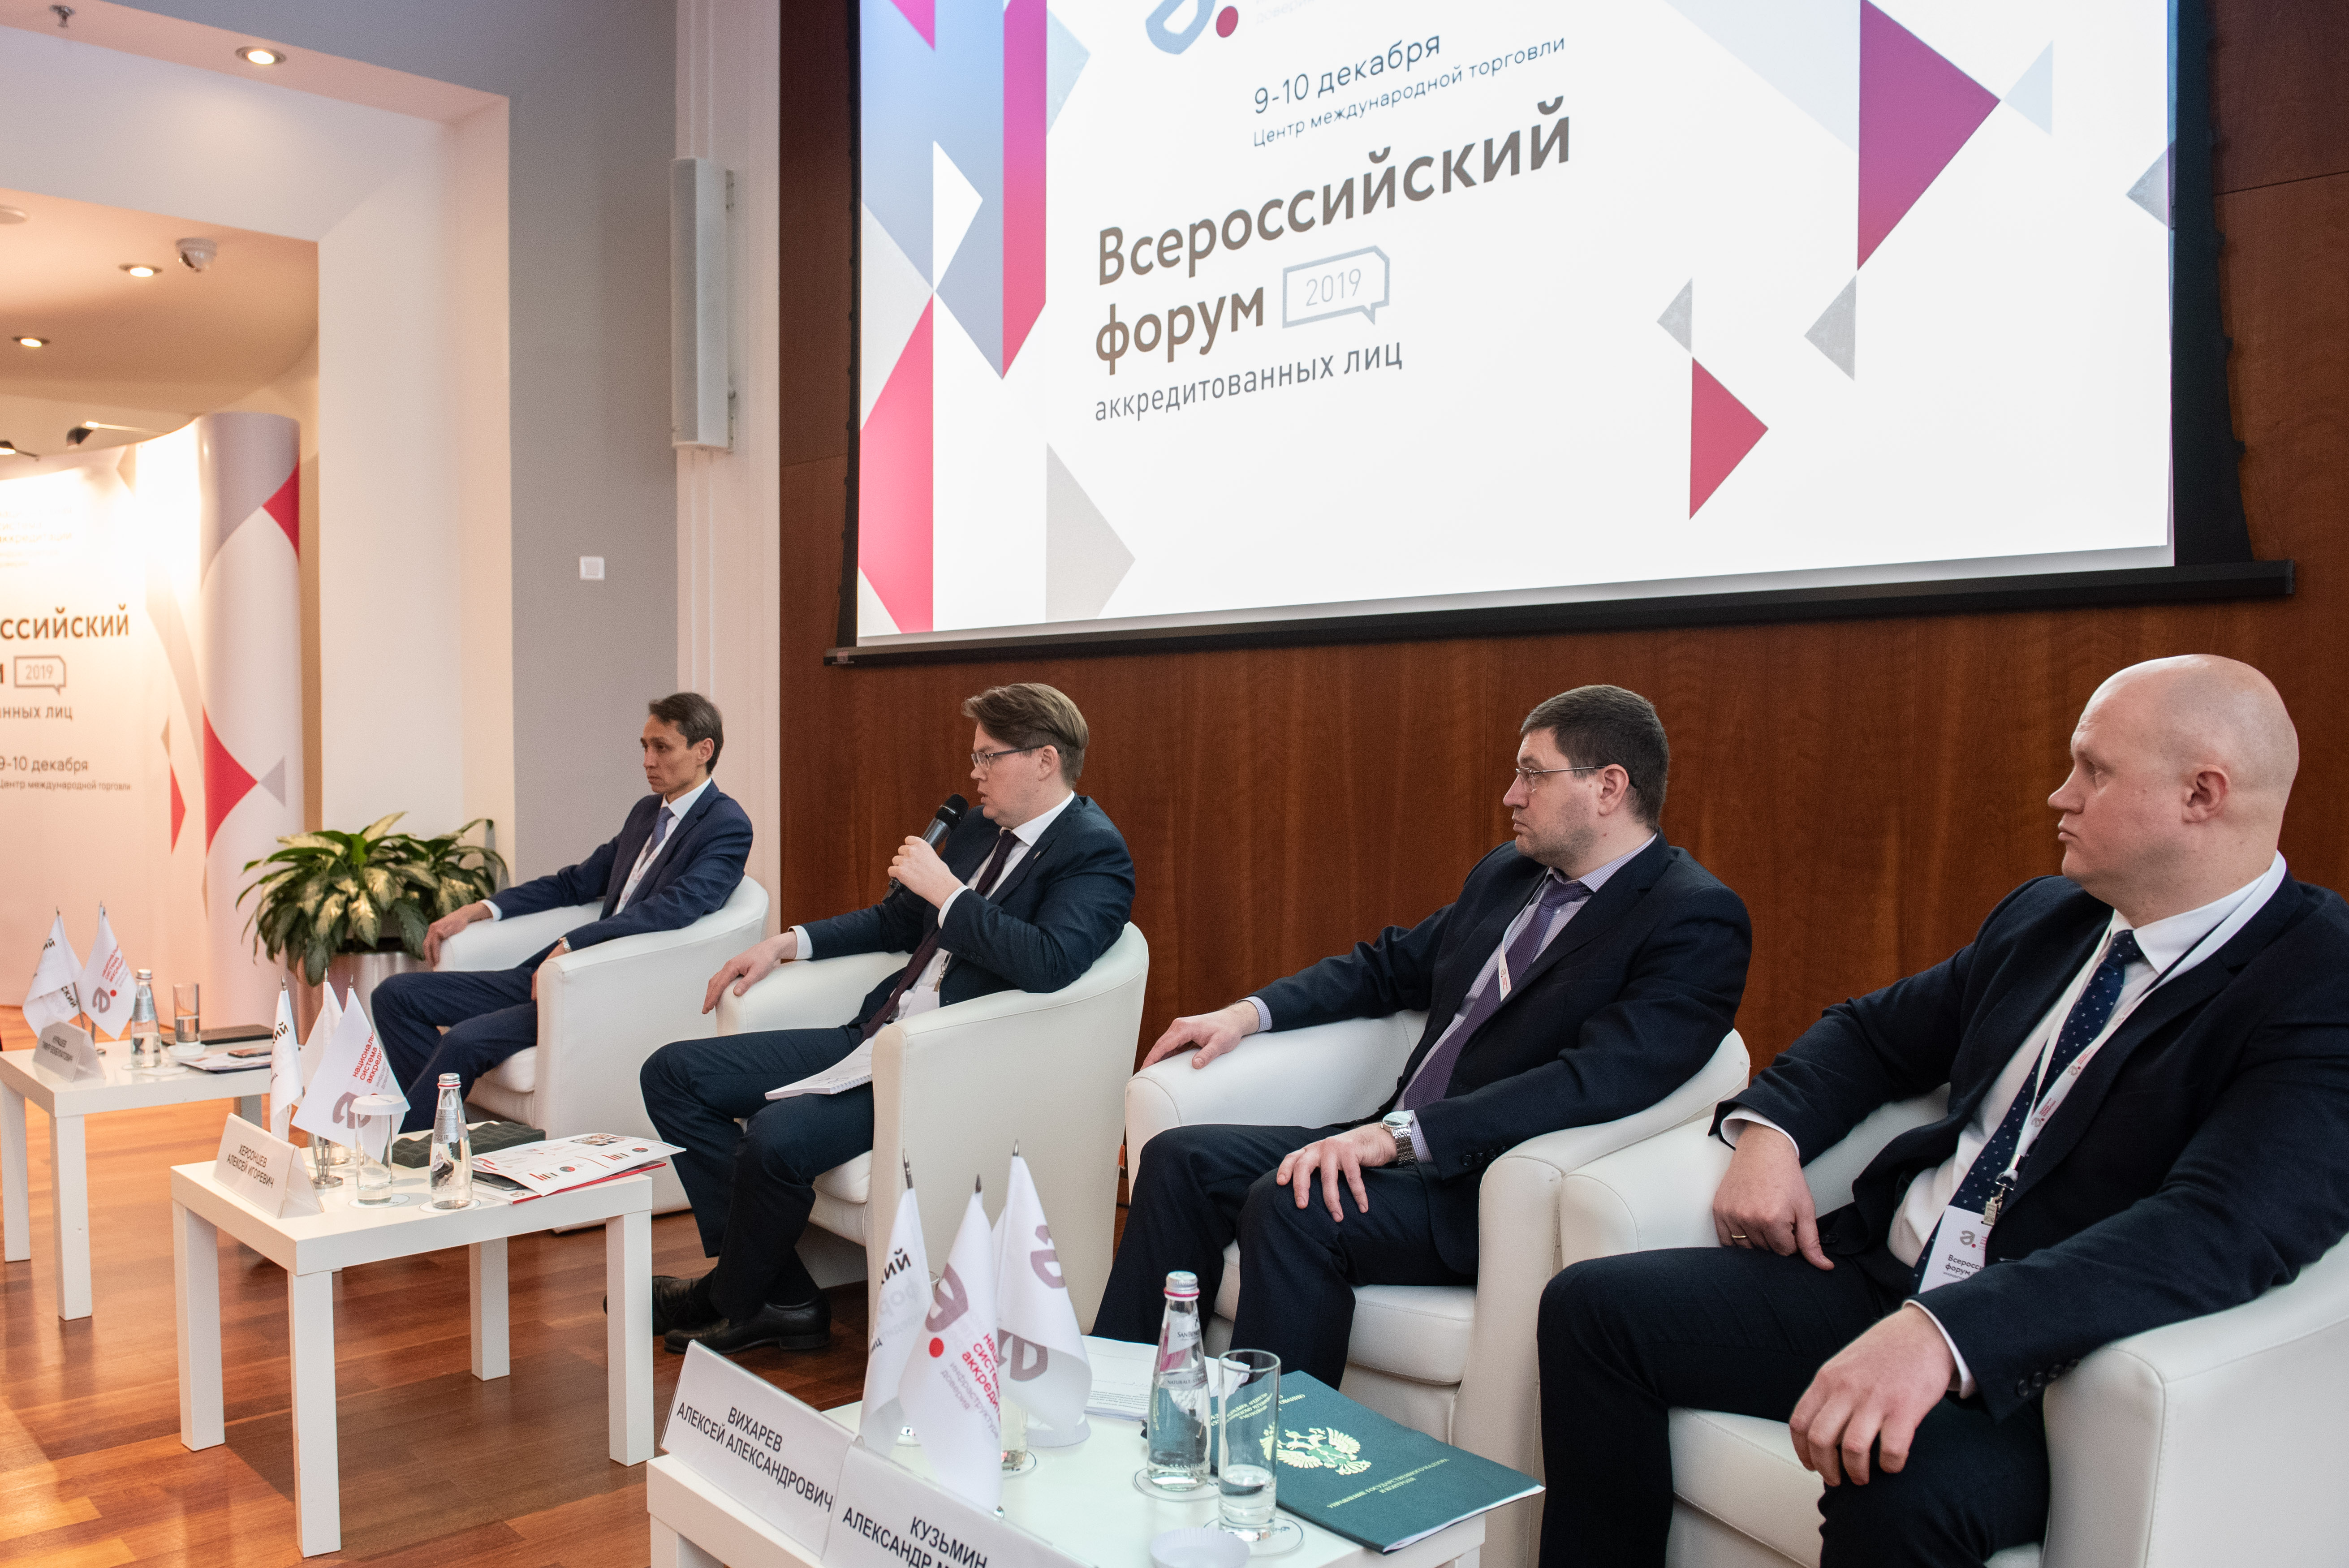 Новое в сфере аккредитации и техническом регулировании на пространстве ЕАЭС обсудили на Всероссийском форуме аккредитованных лиц – 2019